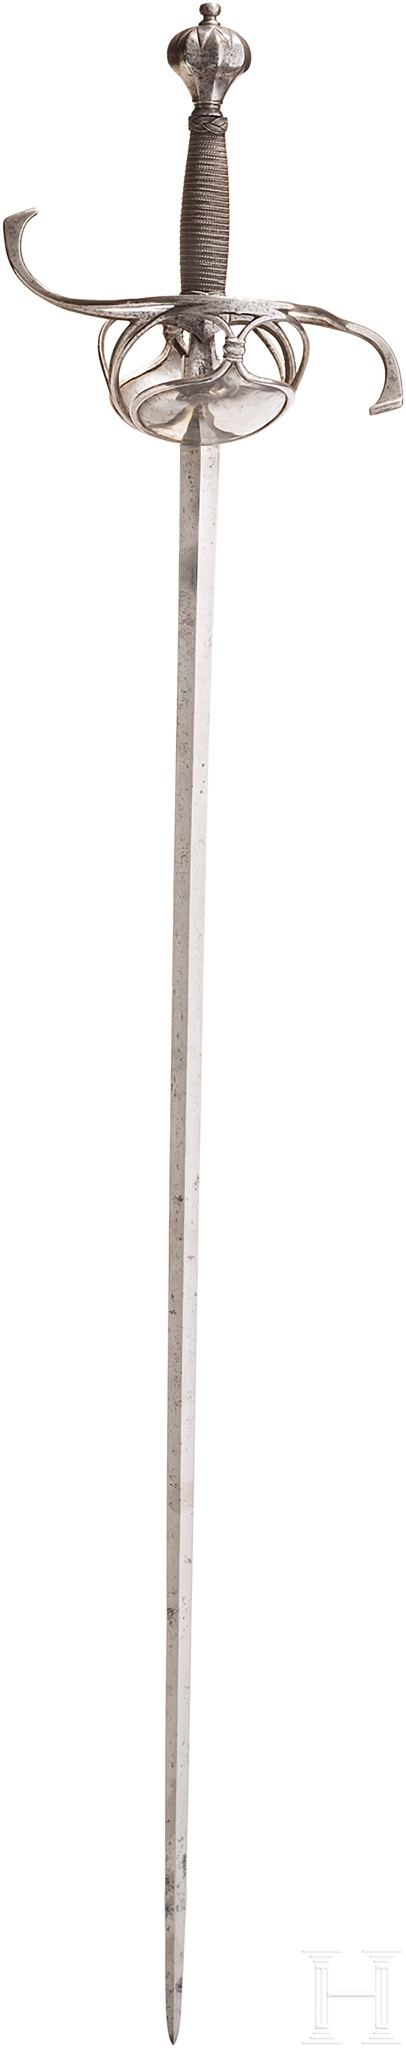 Pappenheimer- Rapier, deutsch, um 1630Zweischneidige Stichklinge mit rautenförmigem Querschnitt